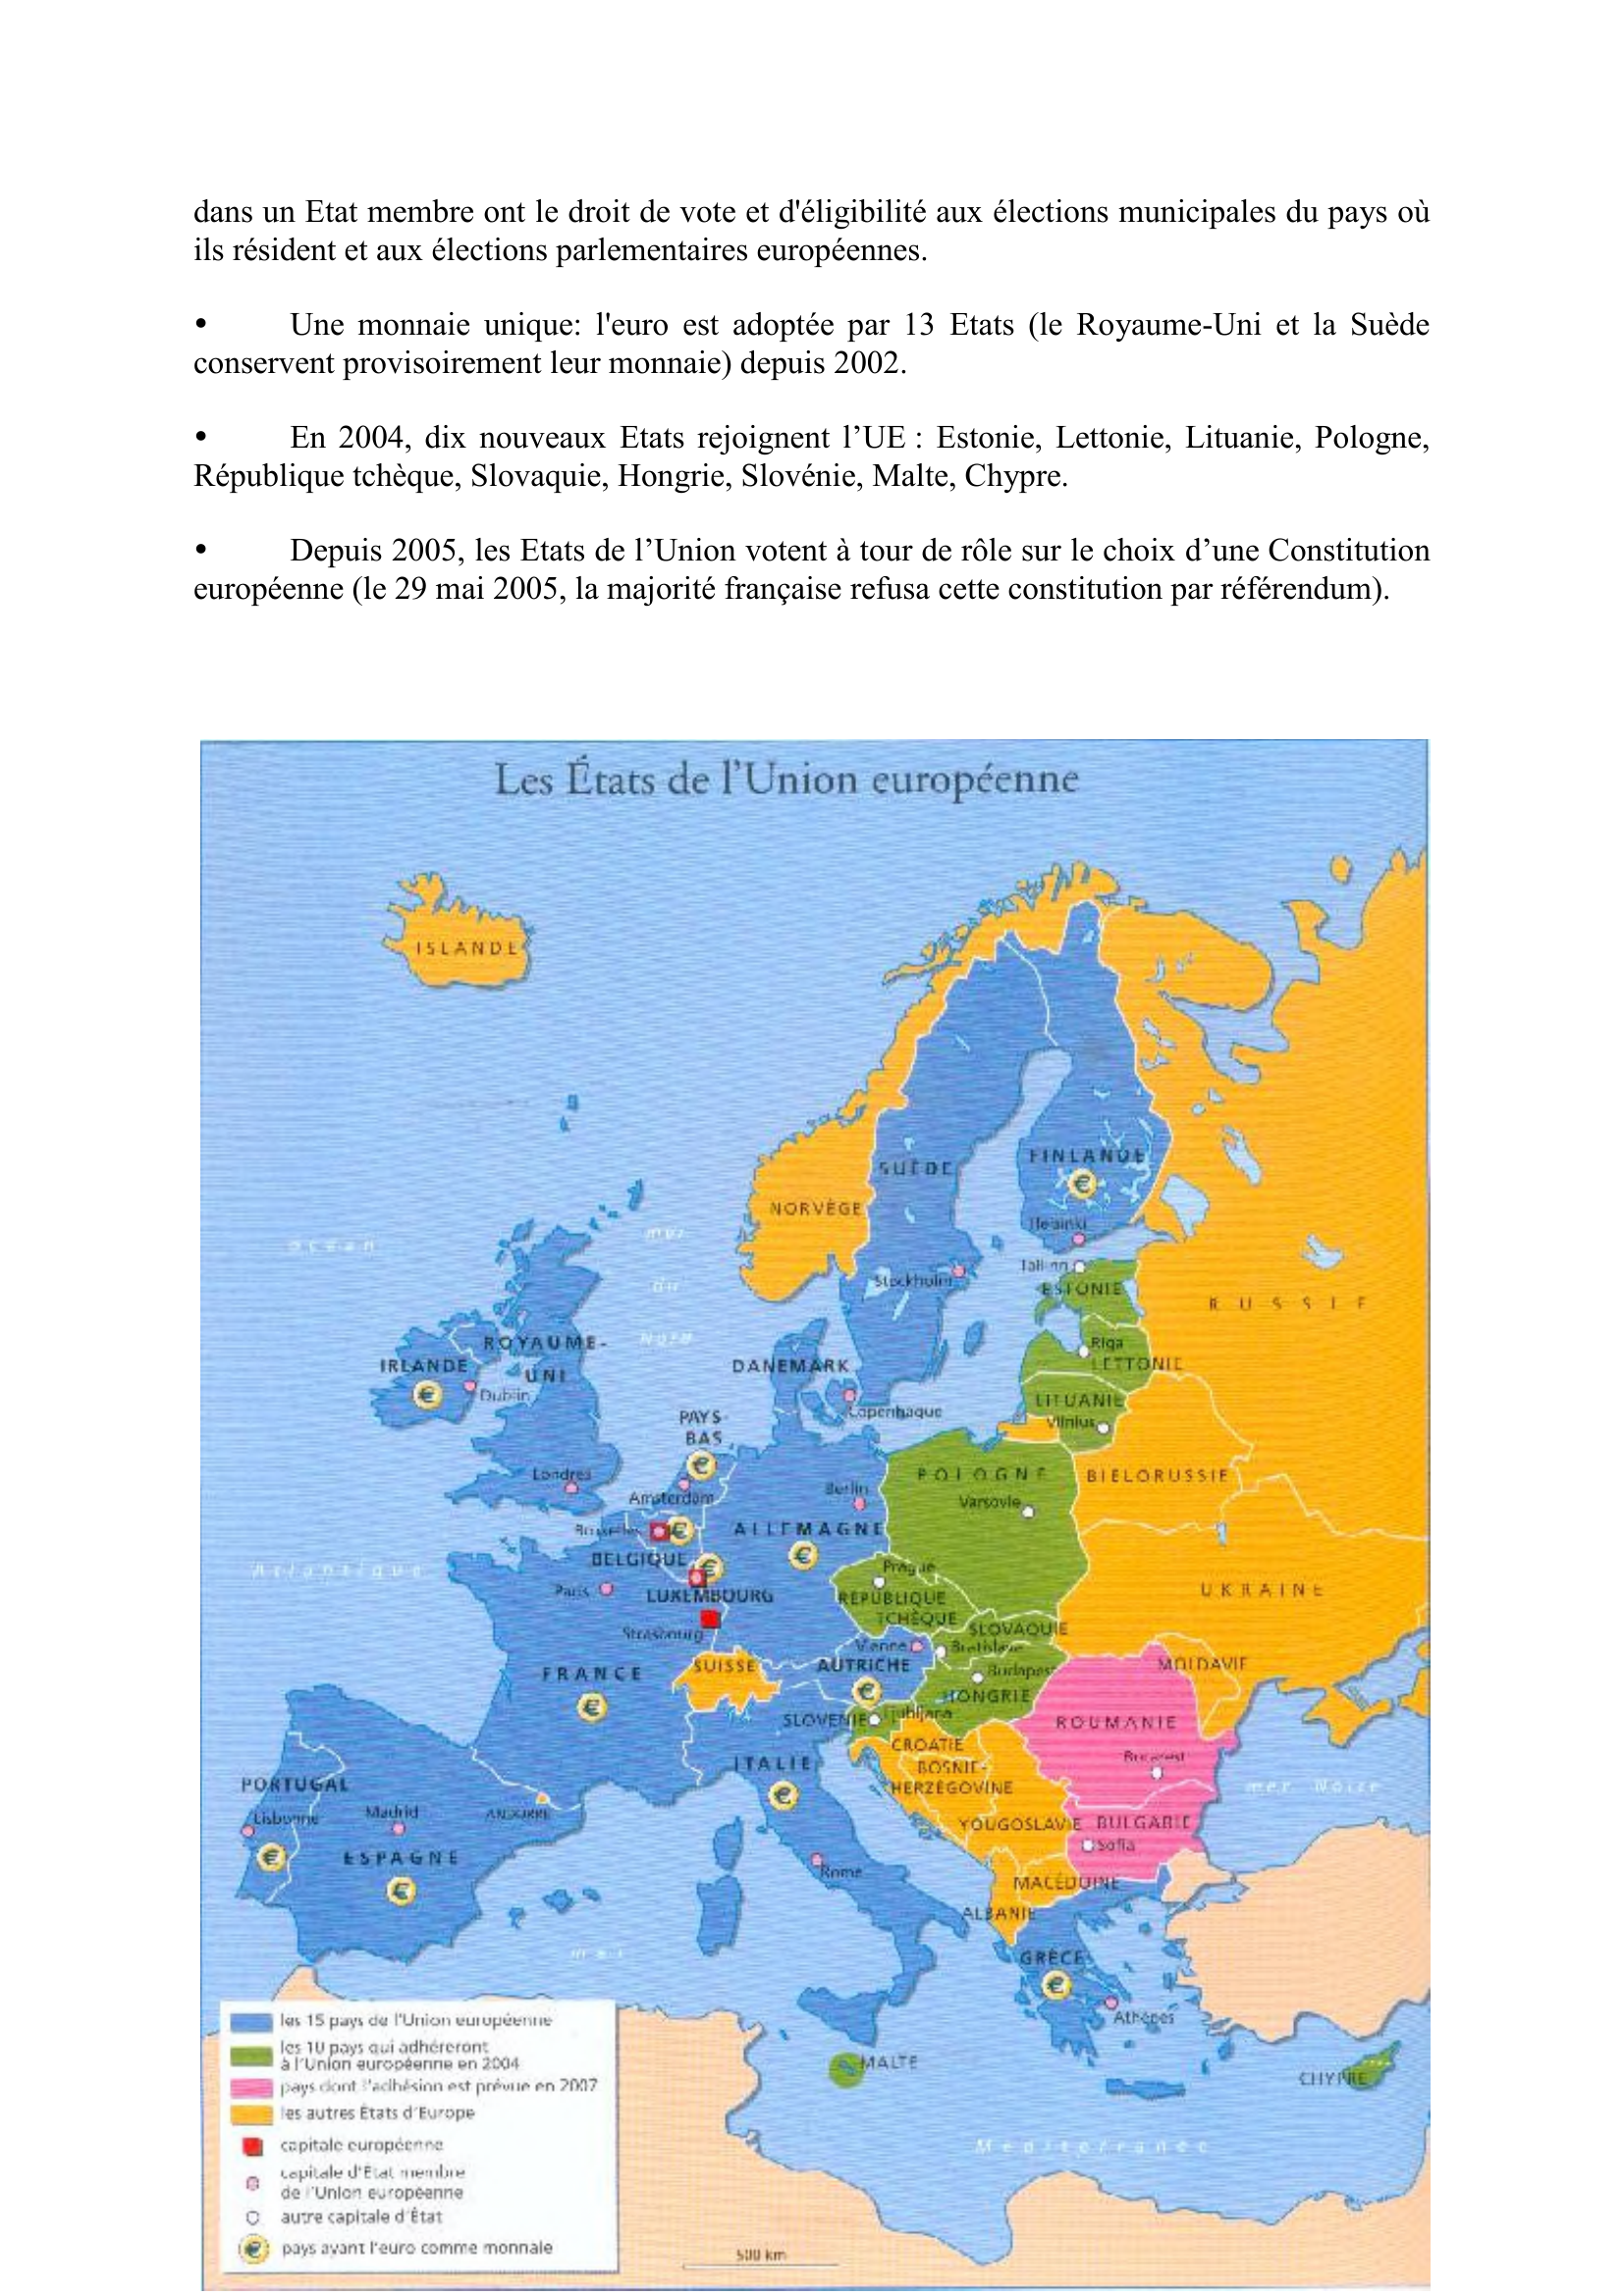 Prévisualisation du document LA CREATION DE L'UNION EUROPEENNE
Fiche composée par sylvain
sylvain.